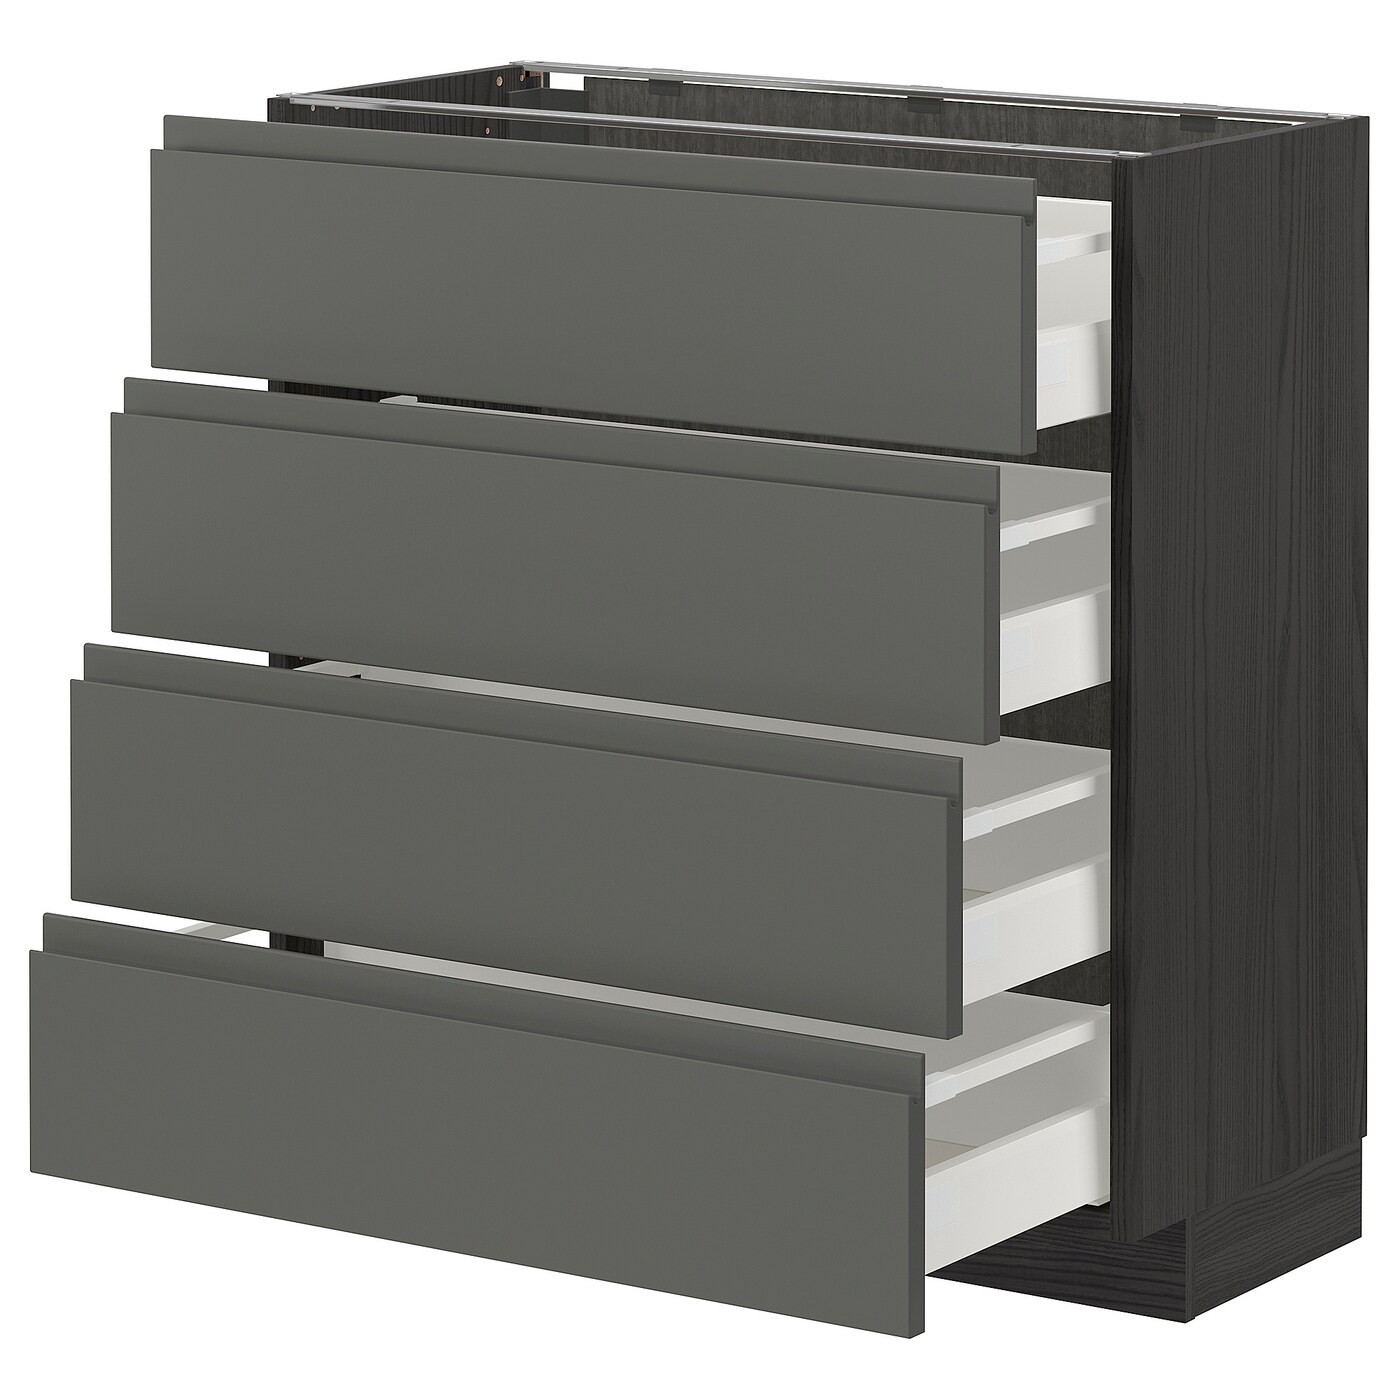 Напольный кухонный шкаф  - IKEA METOD MAXIMERA, 88x39x80см, темно-серый/серый, МЕТОД МАКСИМЕРА ИКЕА